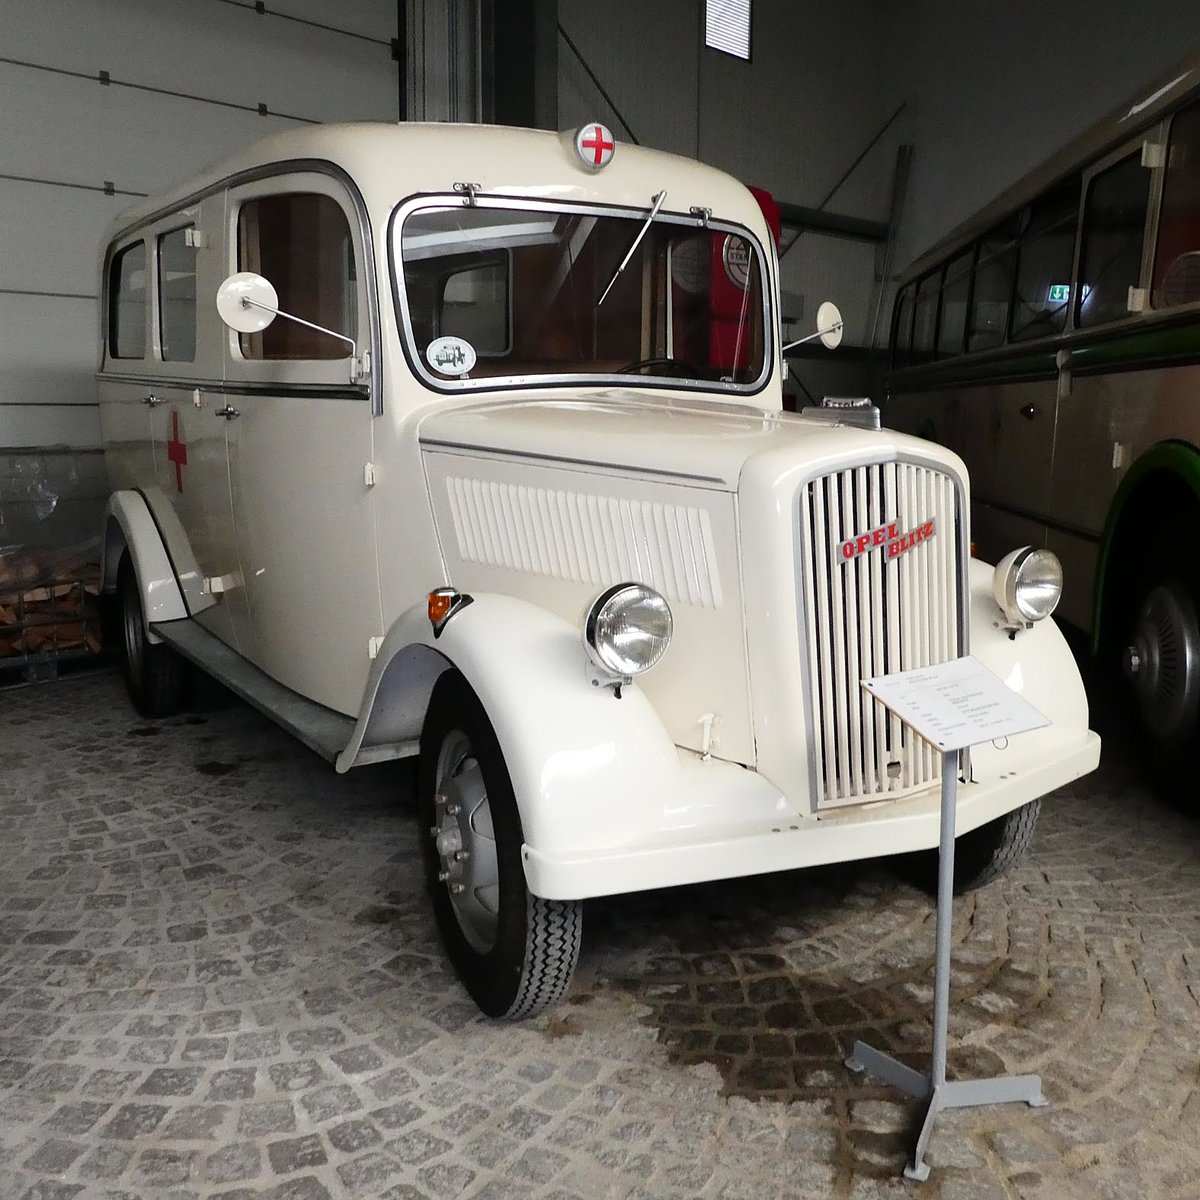 =Opel Blitz 2,5 - 32, Bj. 1949, 55 PS, steht als Sanitätsfahrzeug im sächsischen Nutzfahrzeugmuseum in Hartmannsdorf, Juli 2016